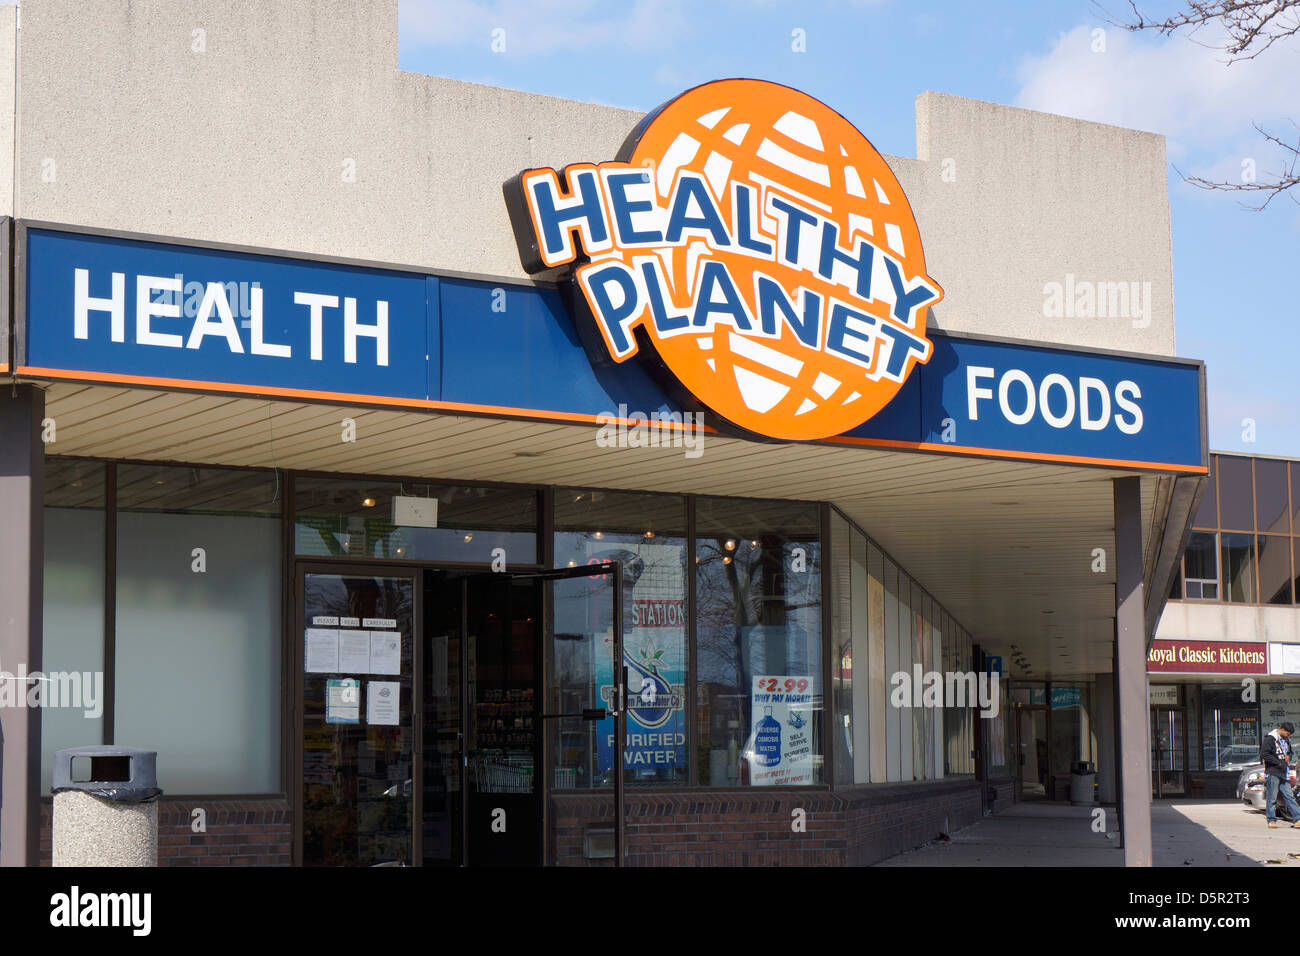 Les aliments santé, les vitamines et suppléments nutritionnels Store, Ontario, Canada Banque D'Images